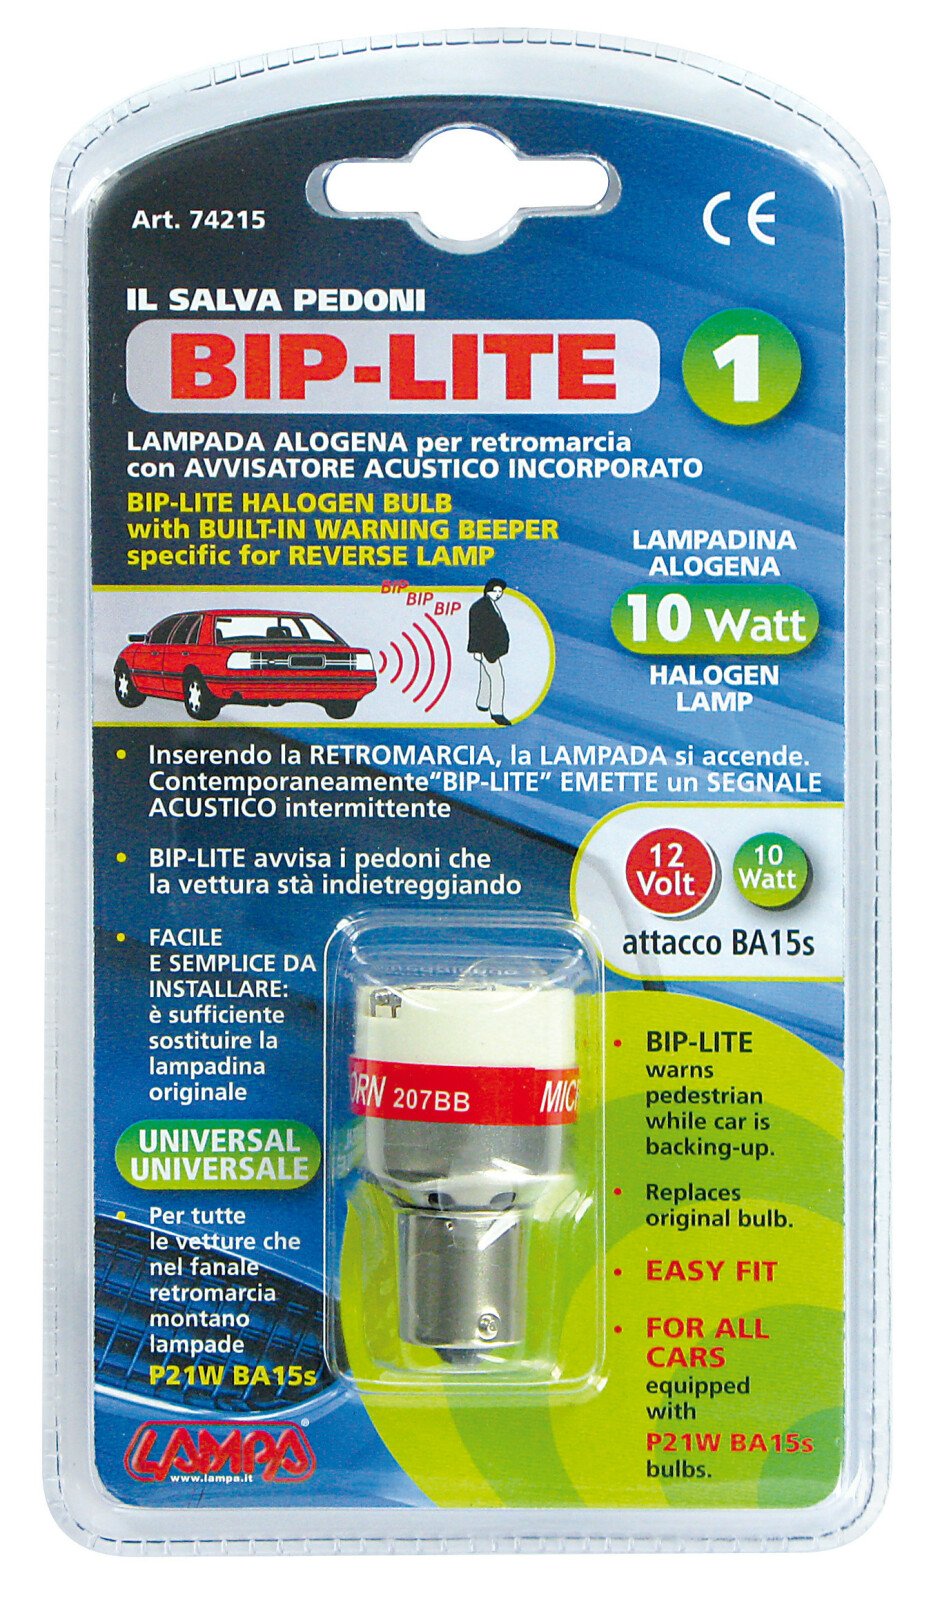 Bip-Lite I - 12V thumb